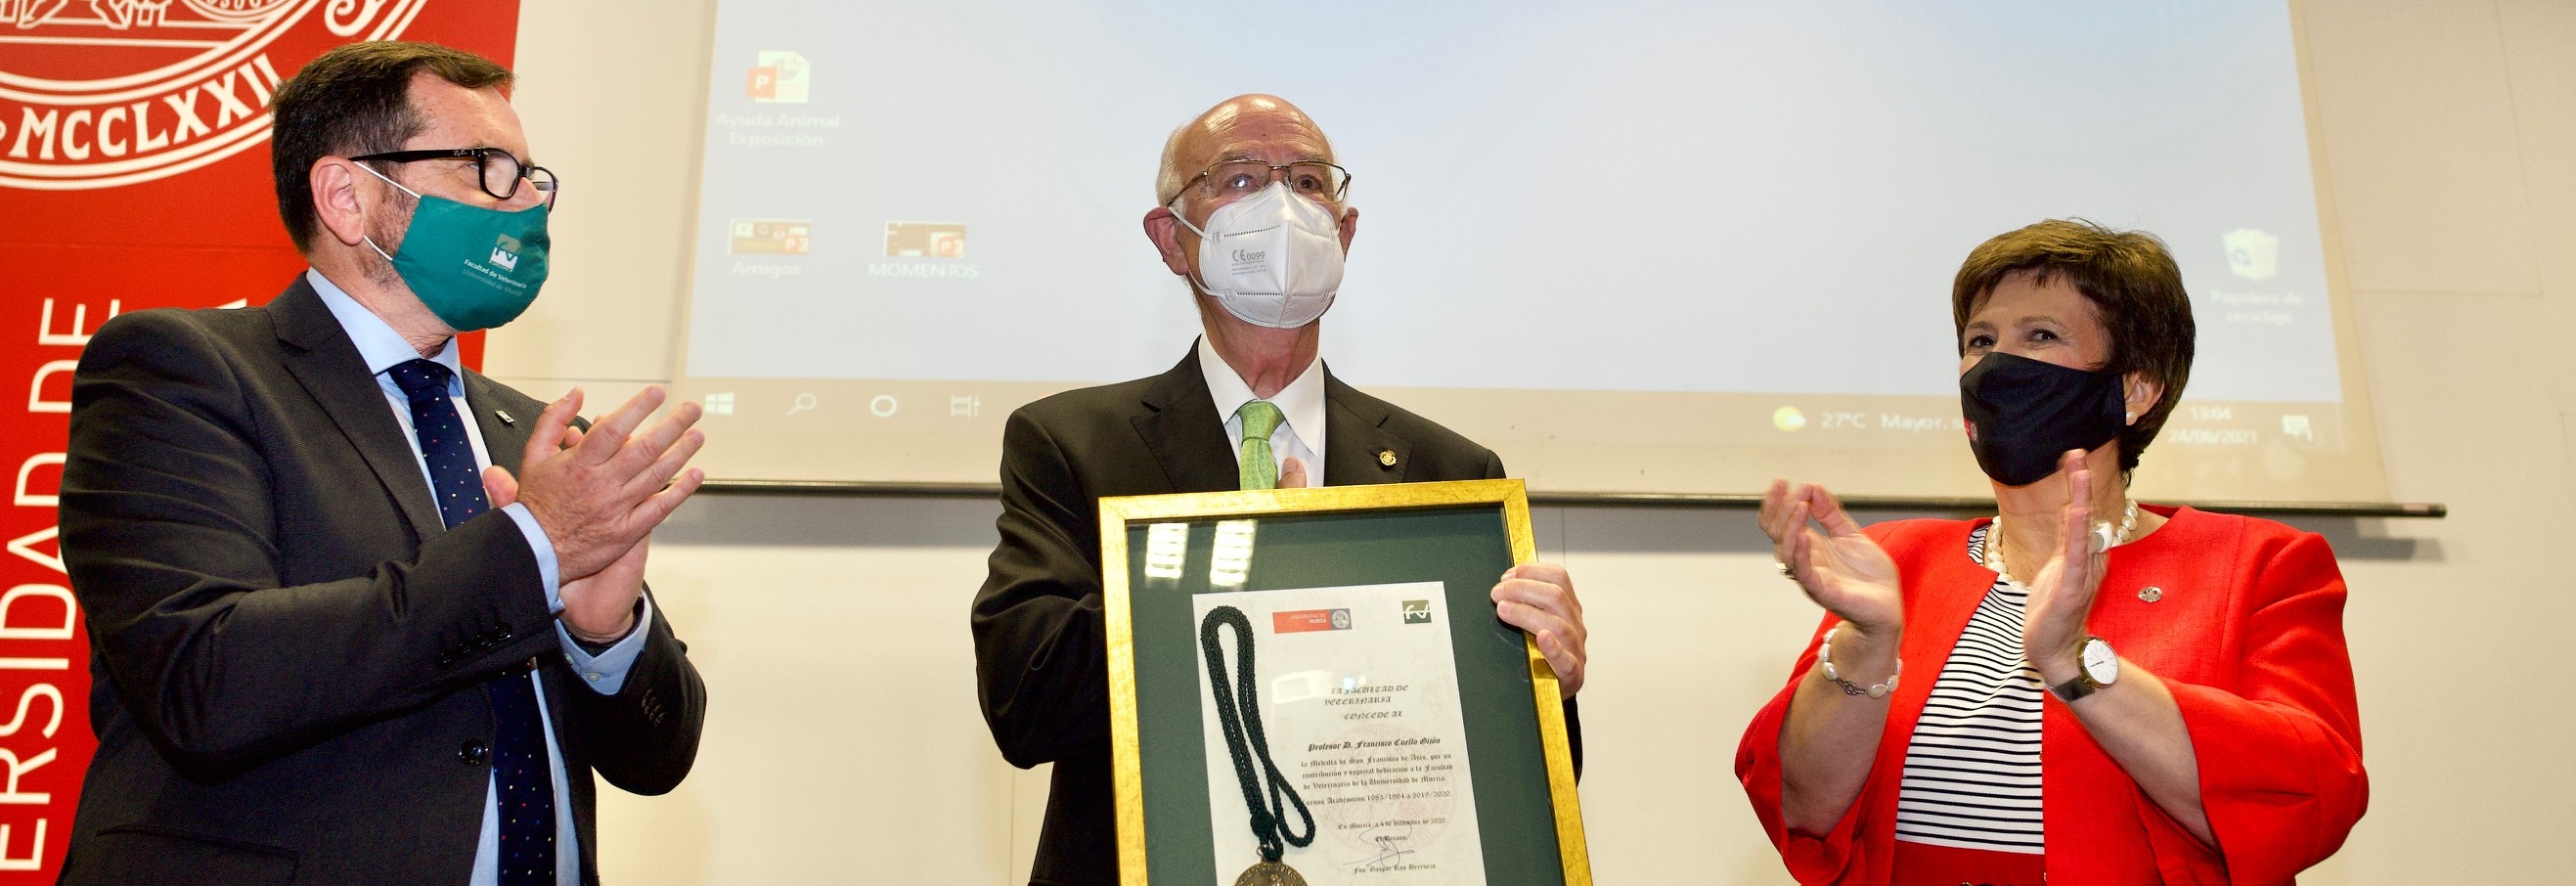 La Facultad de Veterinaria de la UMU rinde homenaje al profesor jubilado Francisco Cuello